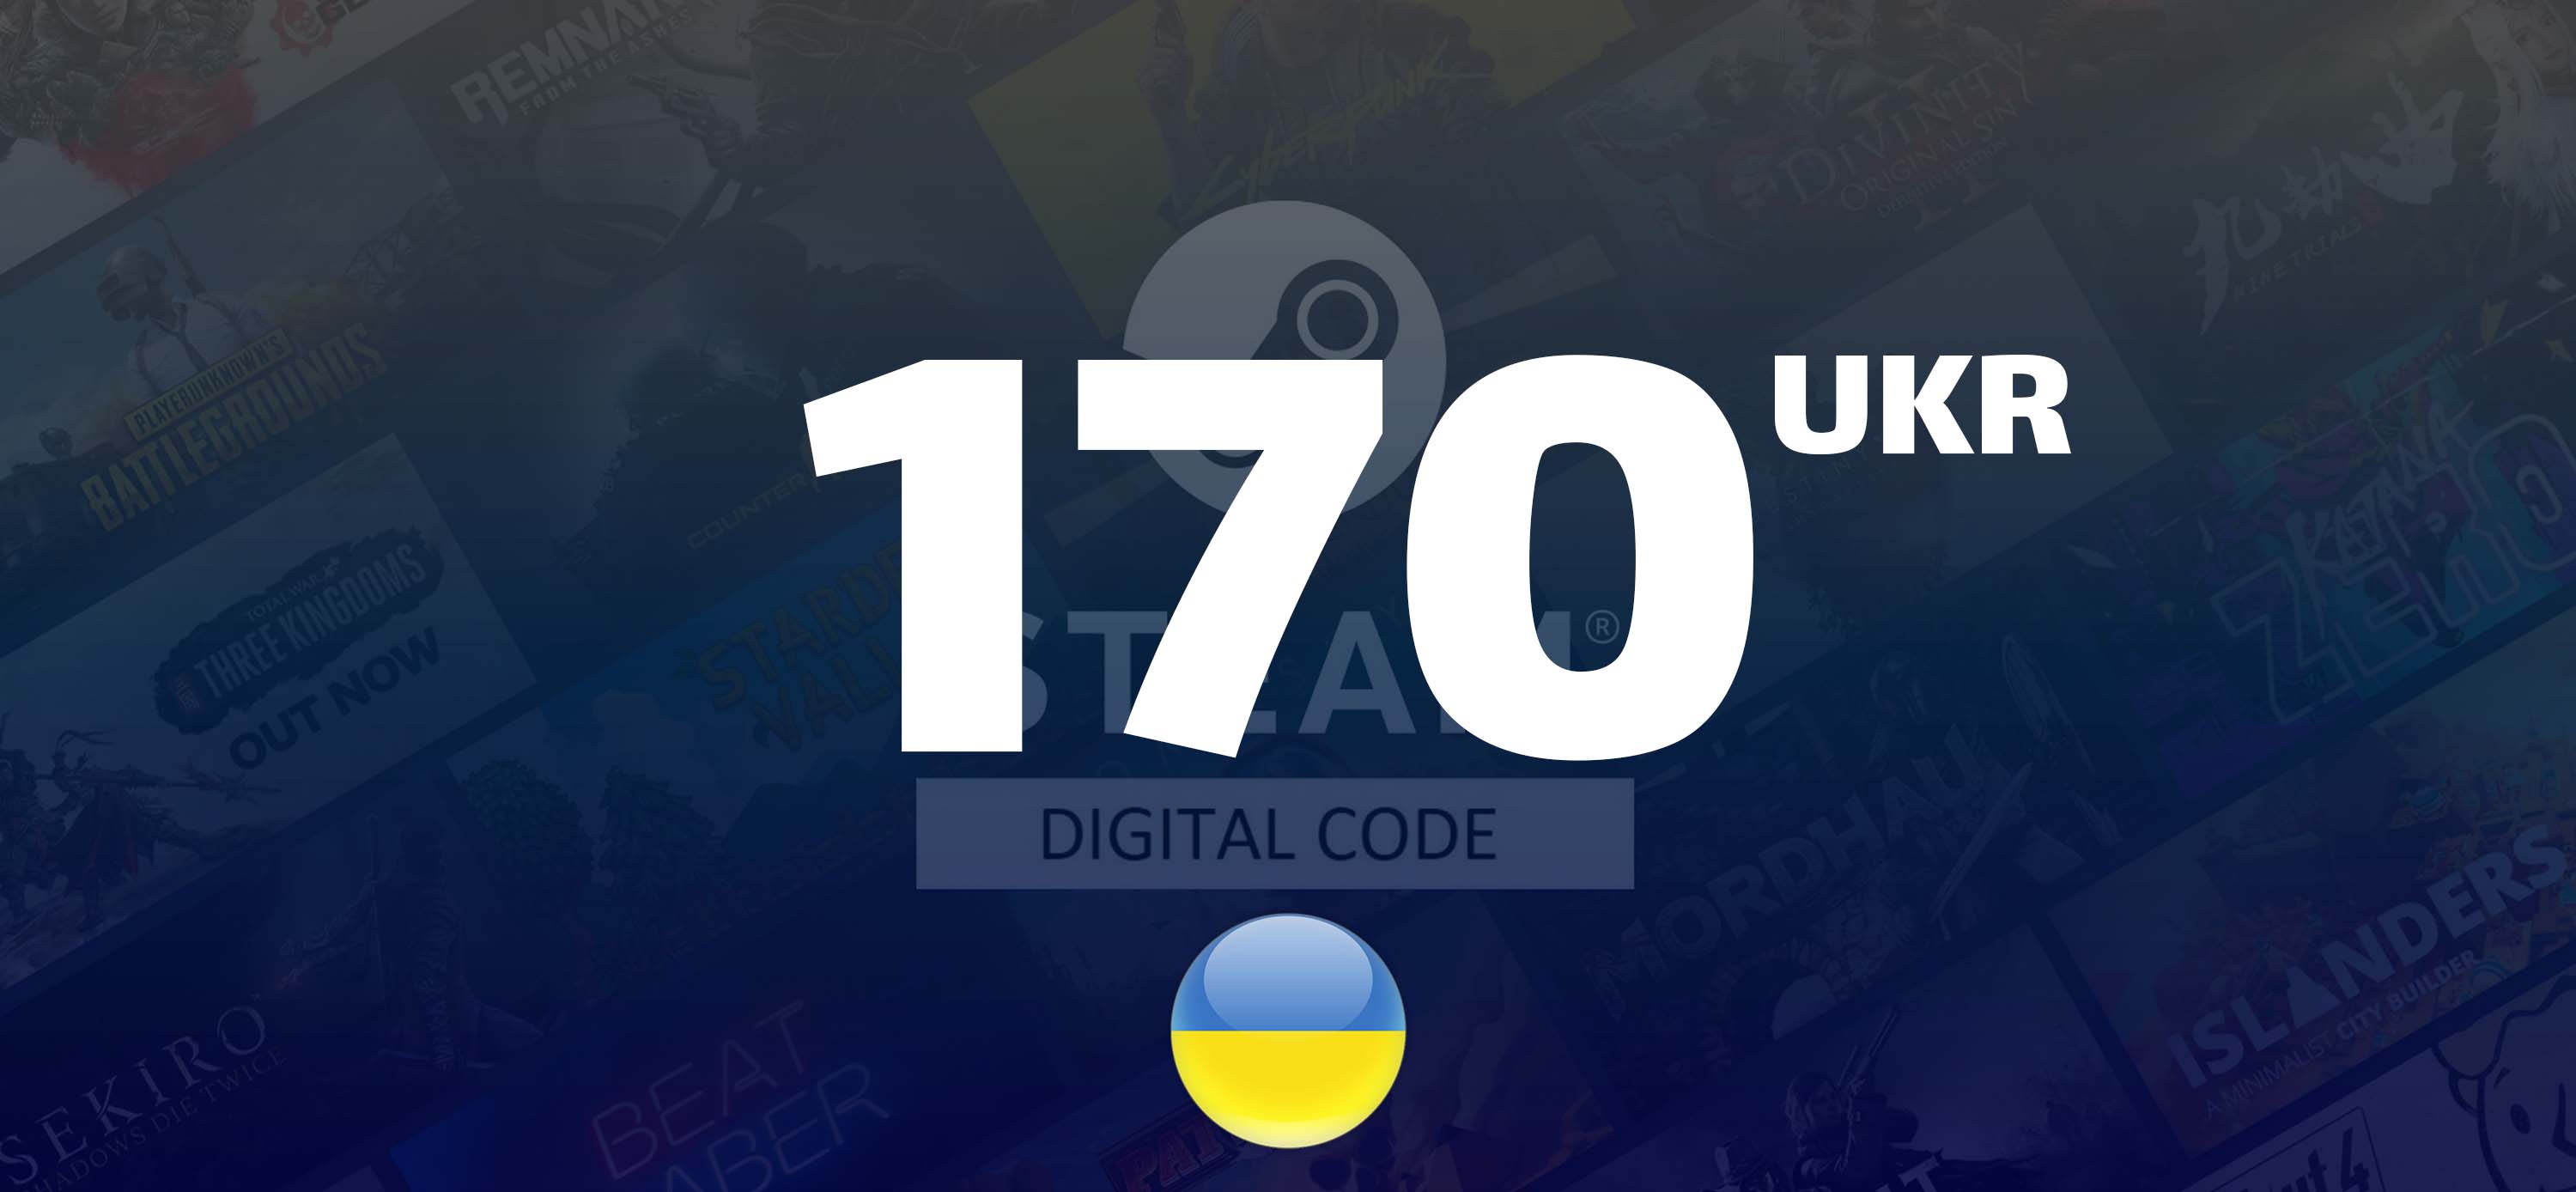 Gift Code Steam : 170 UKR